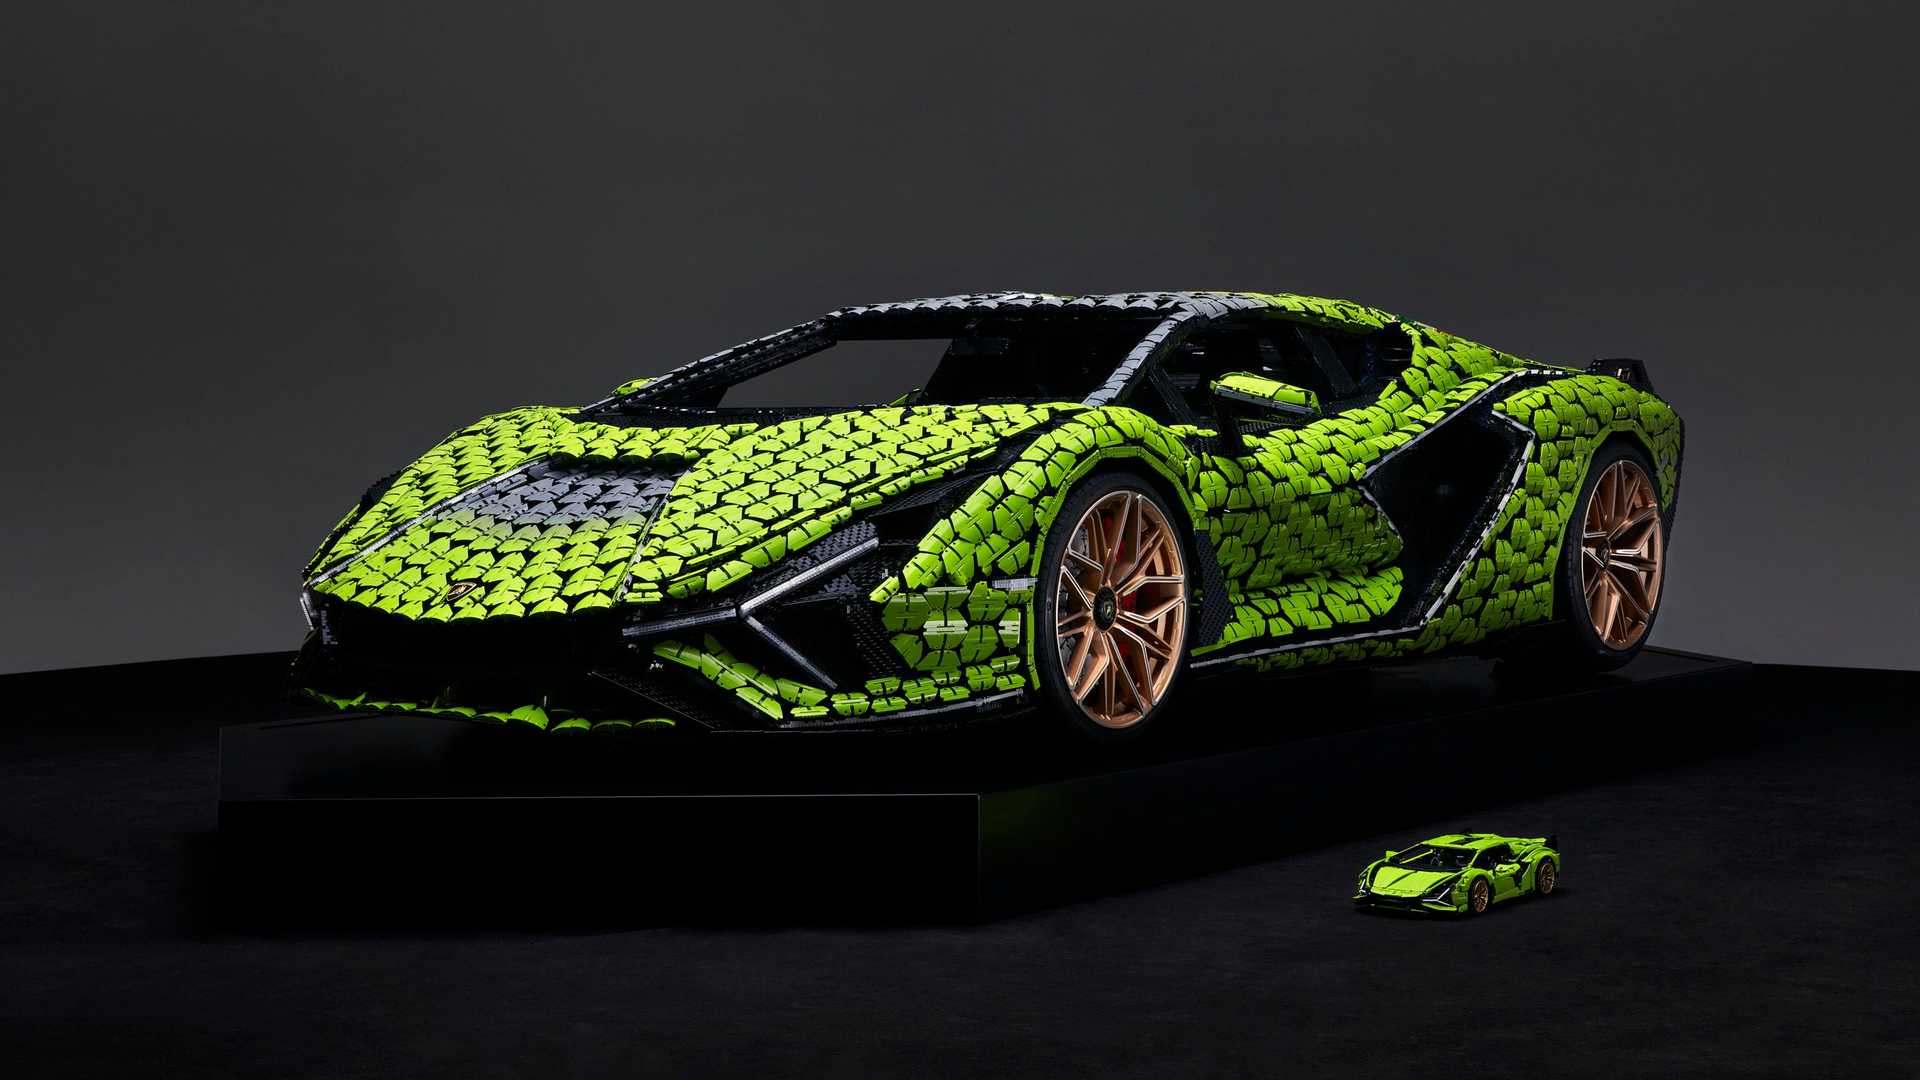 Hacen réplica tamaño real del Lamborghini Sian FKP 37 en Lego (+IMÁGENES) -  Gossip Vehiculos